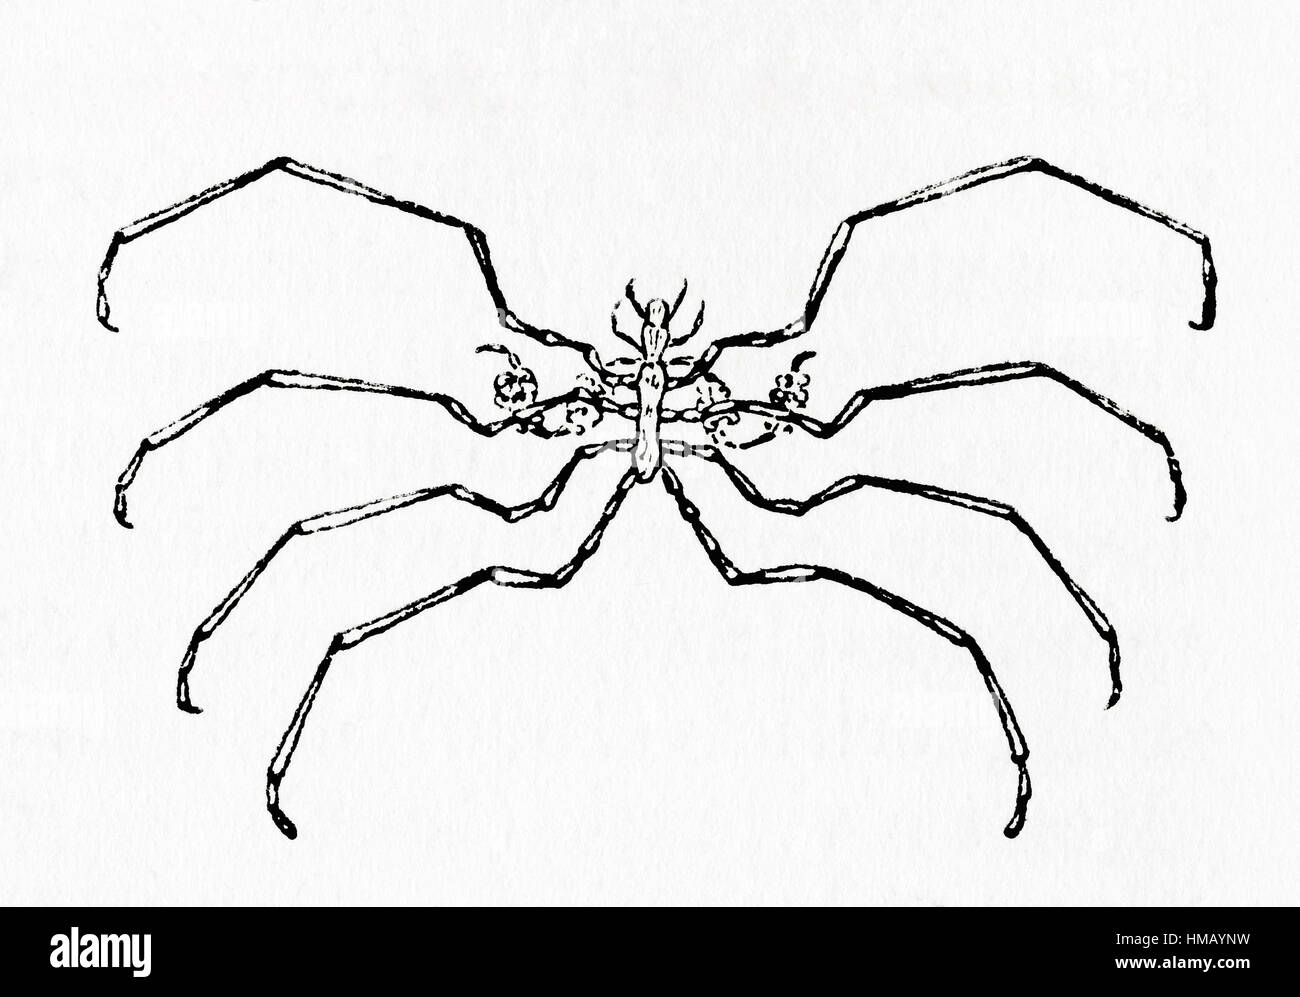 Une araignée de mer aka Pantopoda ou pycnogonides. Arthropodes marins de la classe Pycnogonida. De Meyers lexique, publié en 1928. Banque D'Images